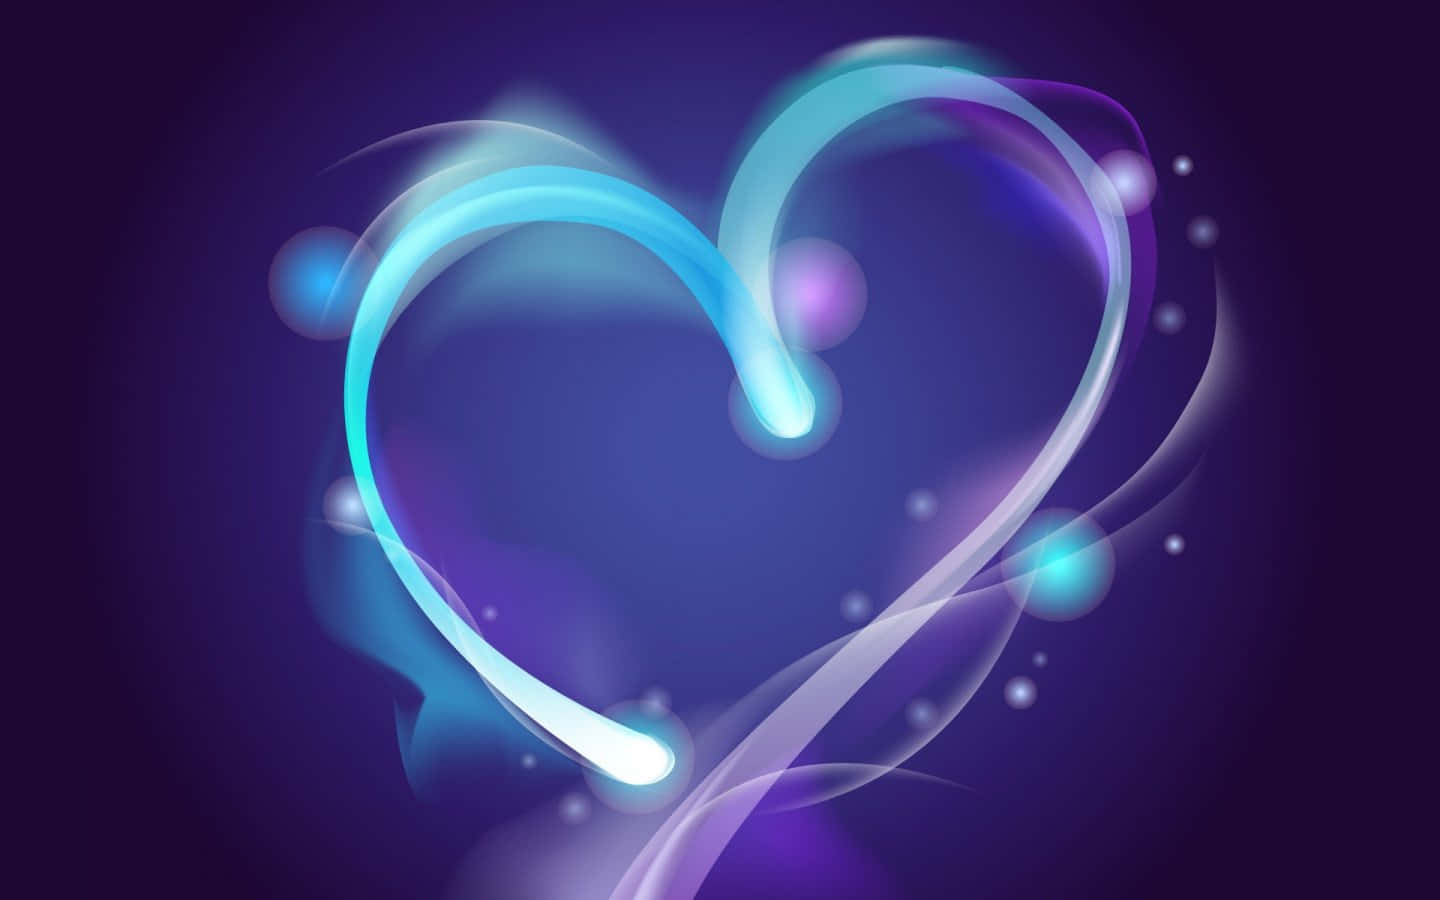 Pinturadigital Em Azul Neon De Coração. Papel de Parede